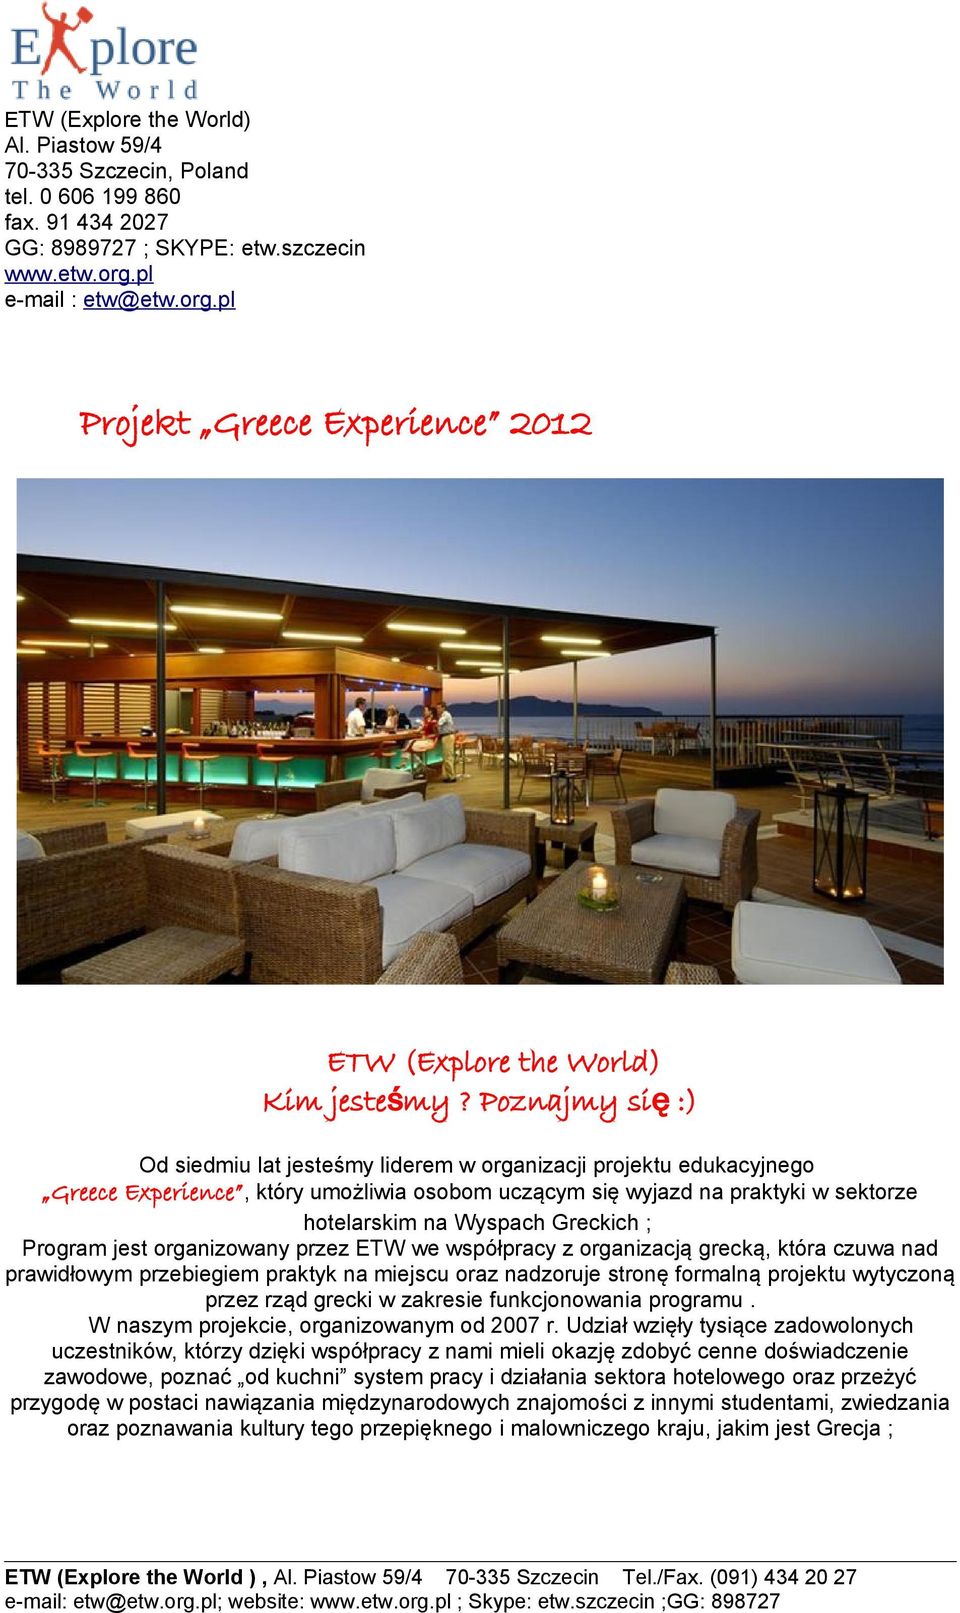 Poznajmy si ę :) Od siedmiu lat jesteśmy liderem w organizacji projektu edukacyjnego Greece Experience, który umożliwia osobom uczącym się wyjazd na praktyki w sektorze hotelarskim na Wyspach